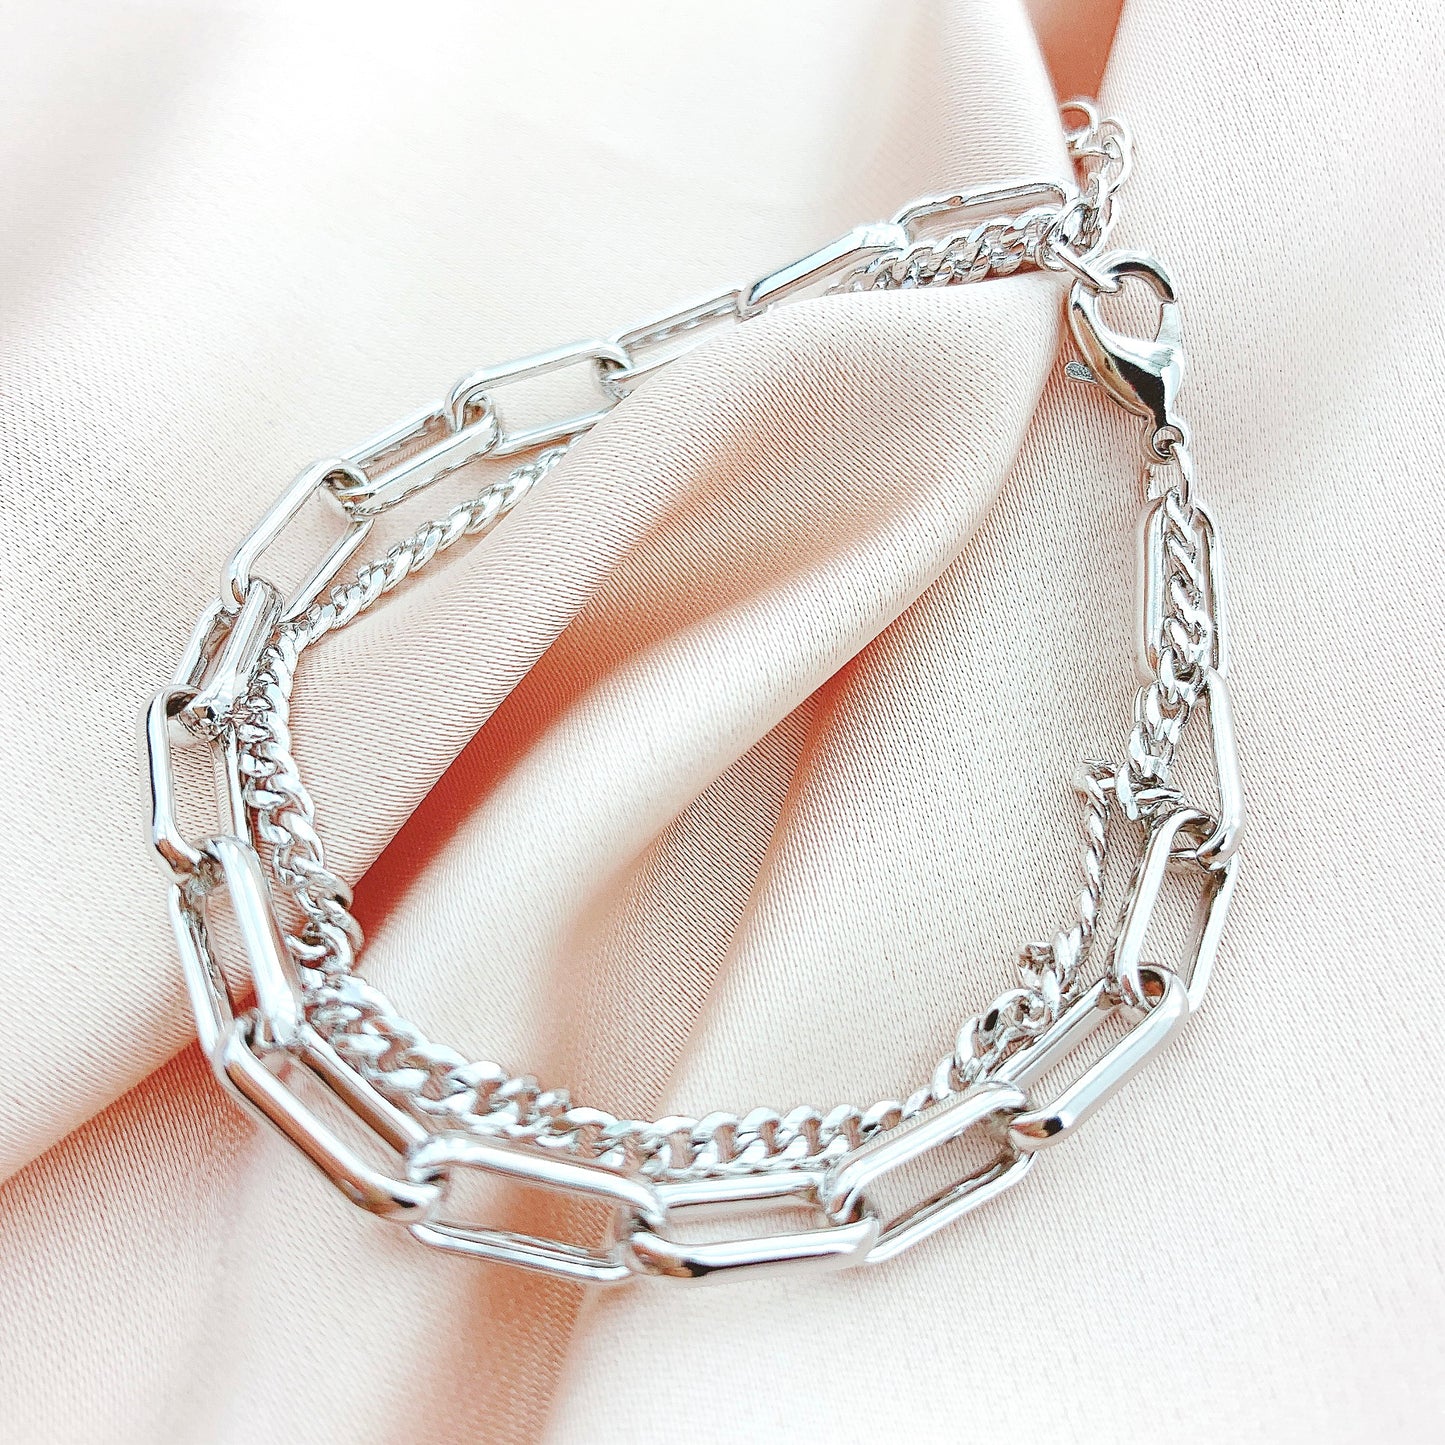 Women's Fashion Chain Bracelet